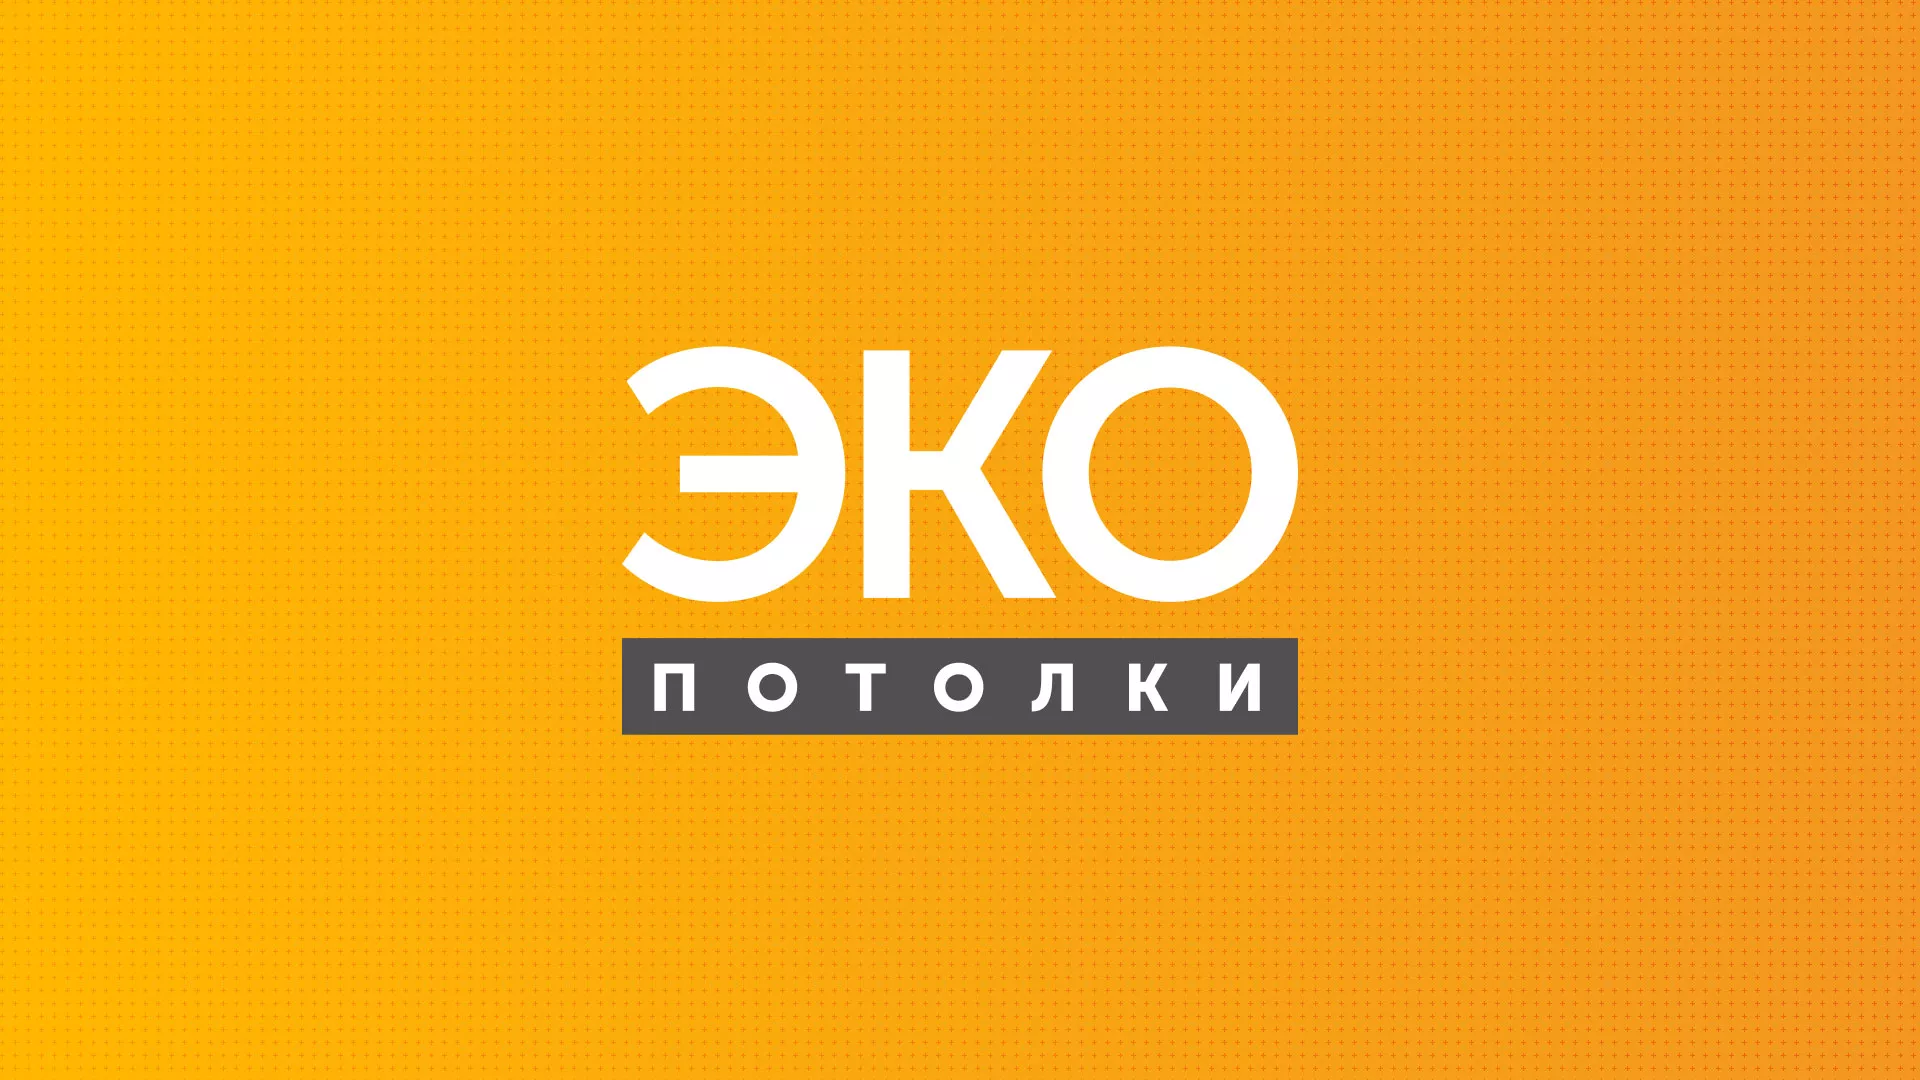 Разработка сайта по натяжным потолкам «Эко Потолки» в Серпухове